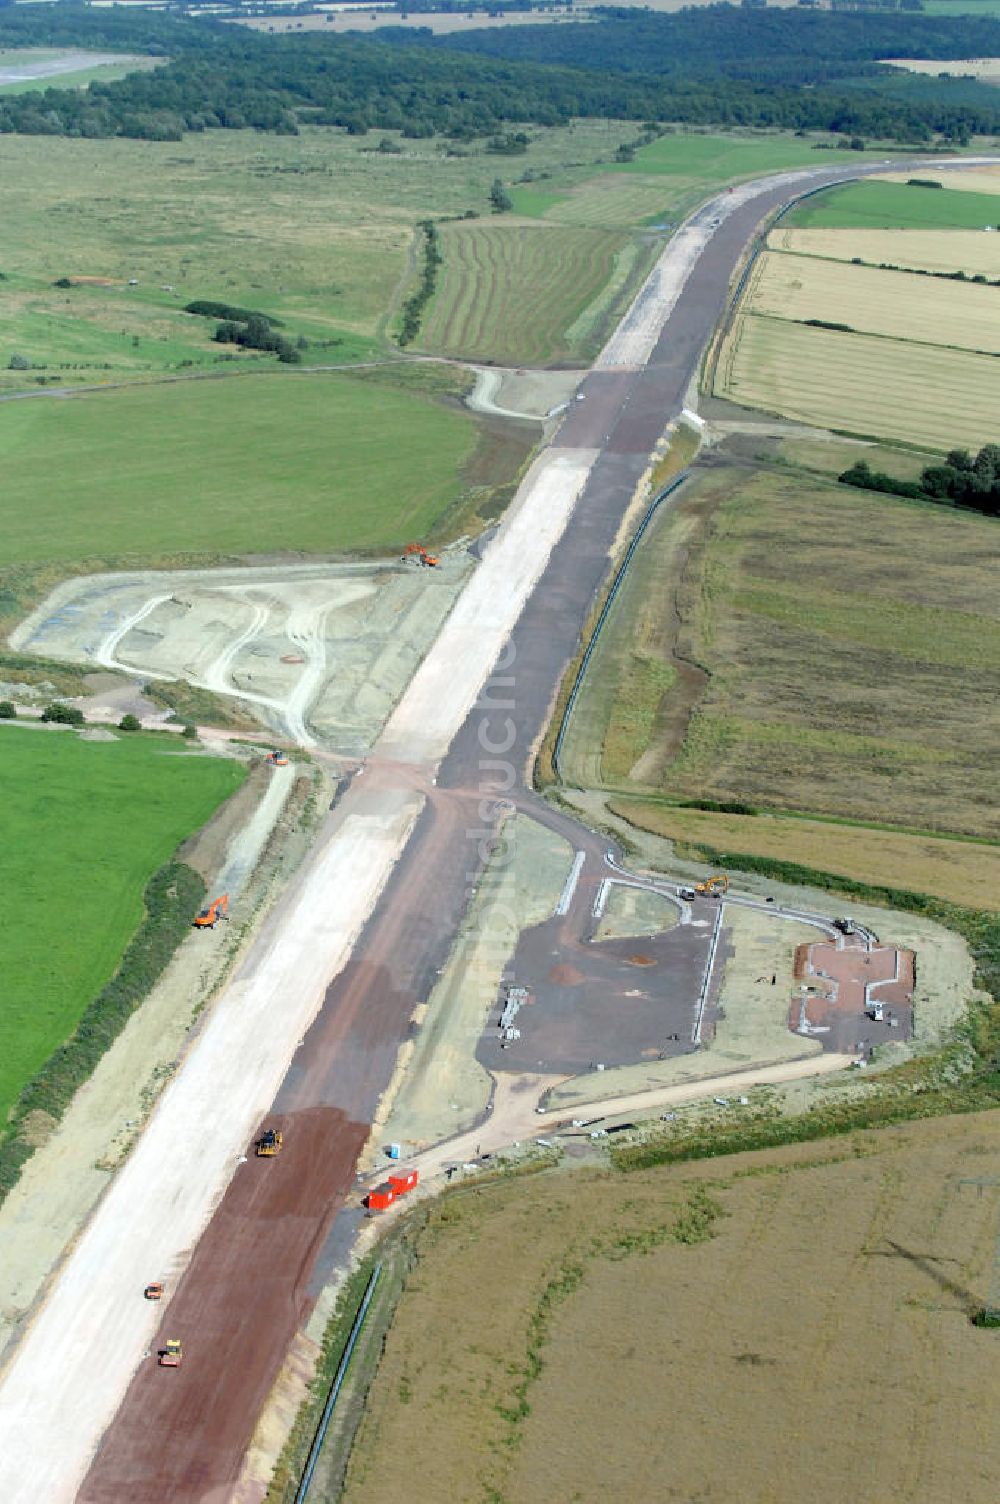 Luftbild Wenigenlupnitz - Blick auf die Baustelle der südlichen (v) und nördlichen (h) PWC-Anlage / Parkplatz mit WC / Rastplatz der A4 bei Wenigenlupnitz